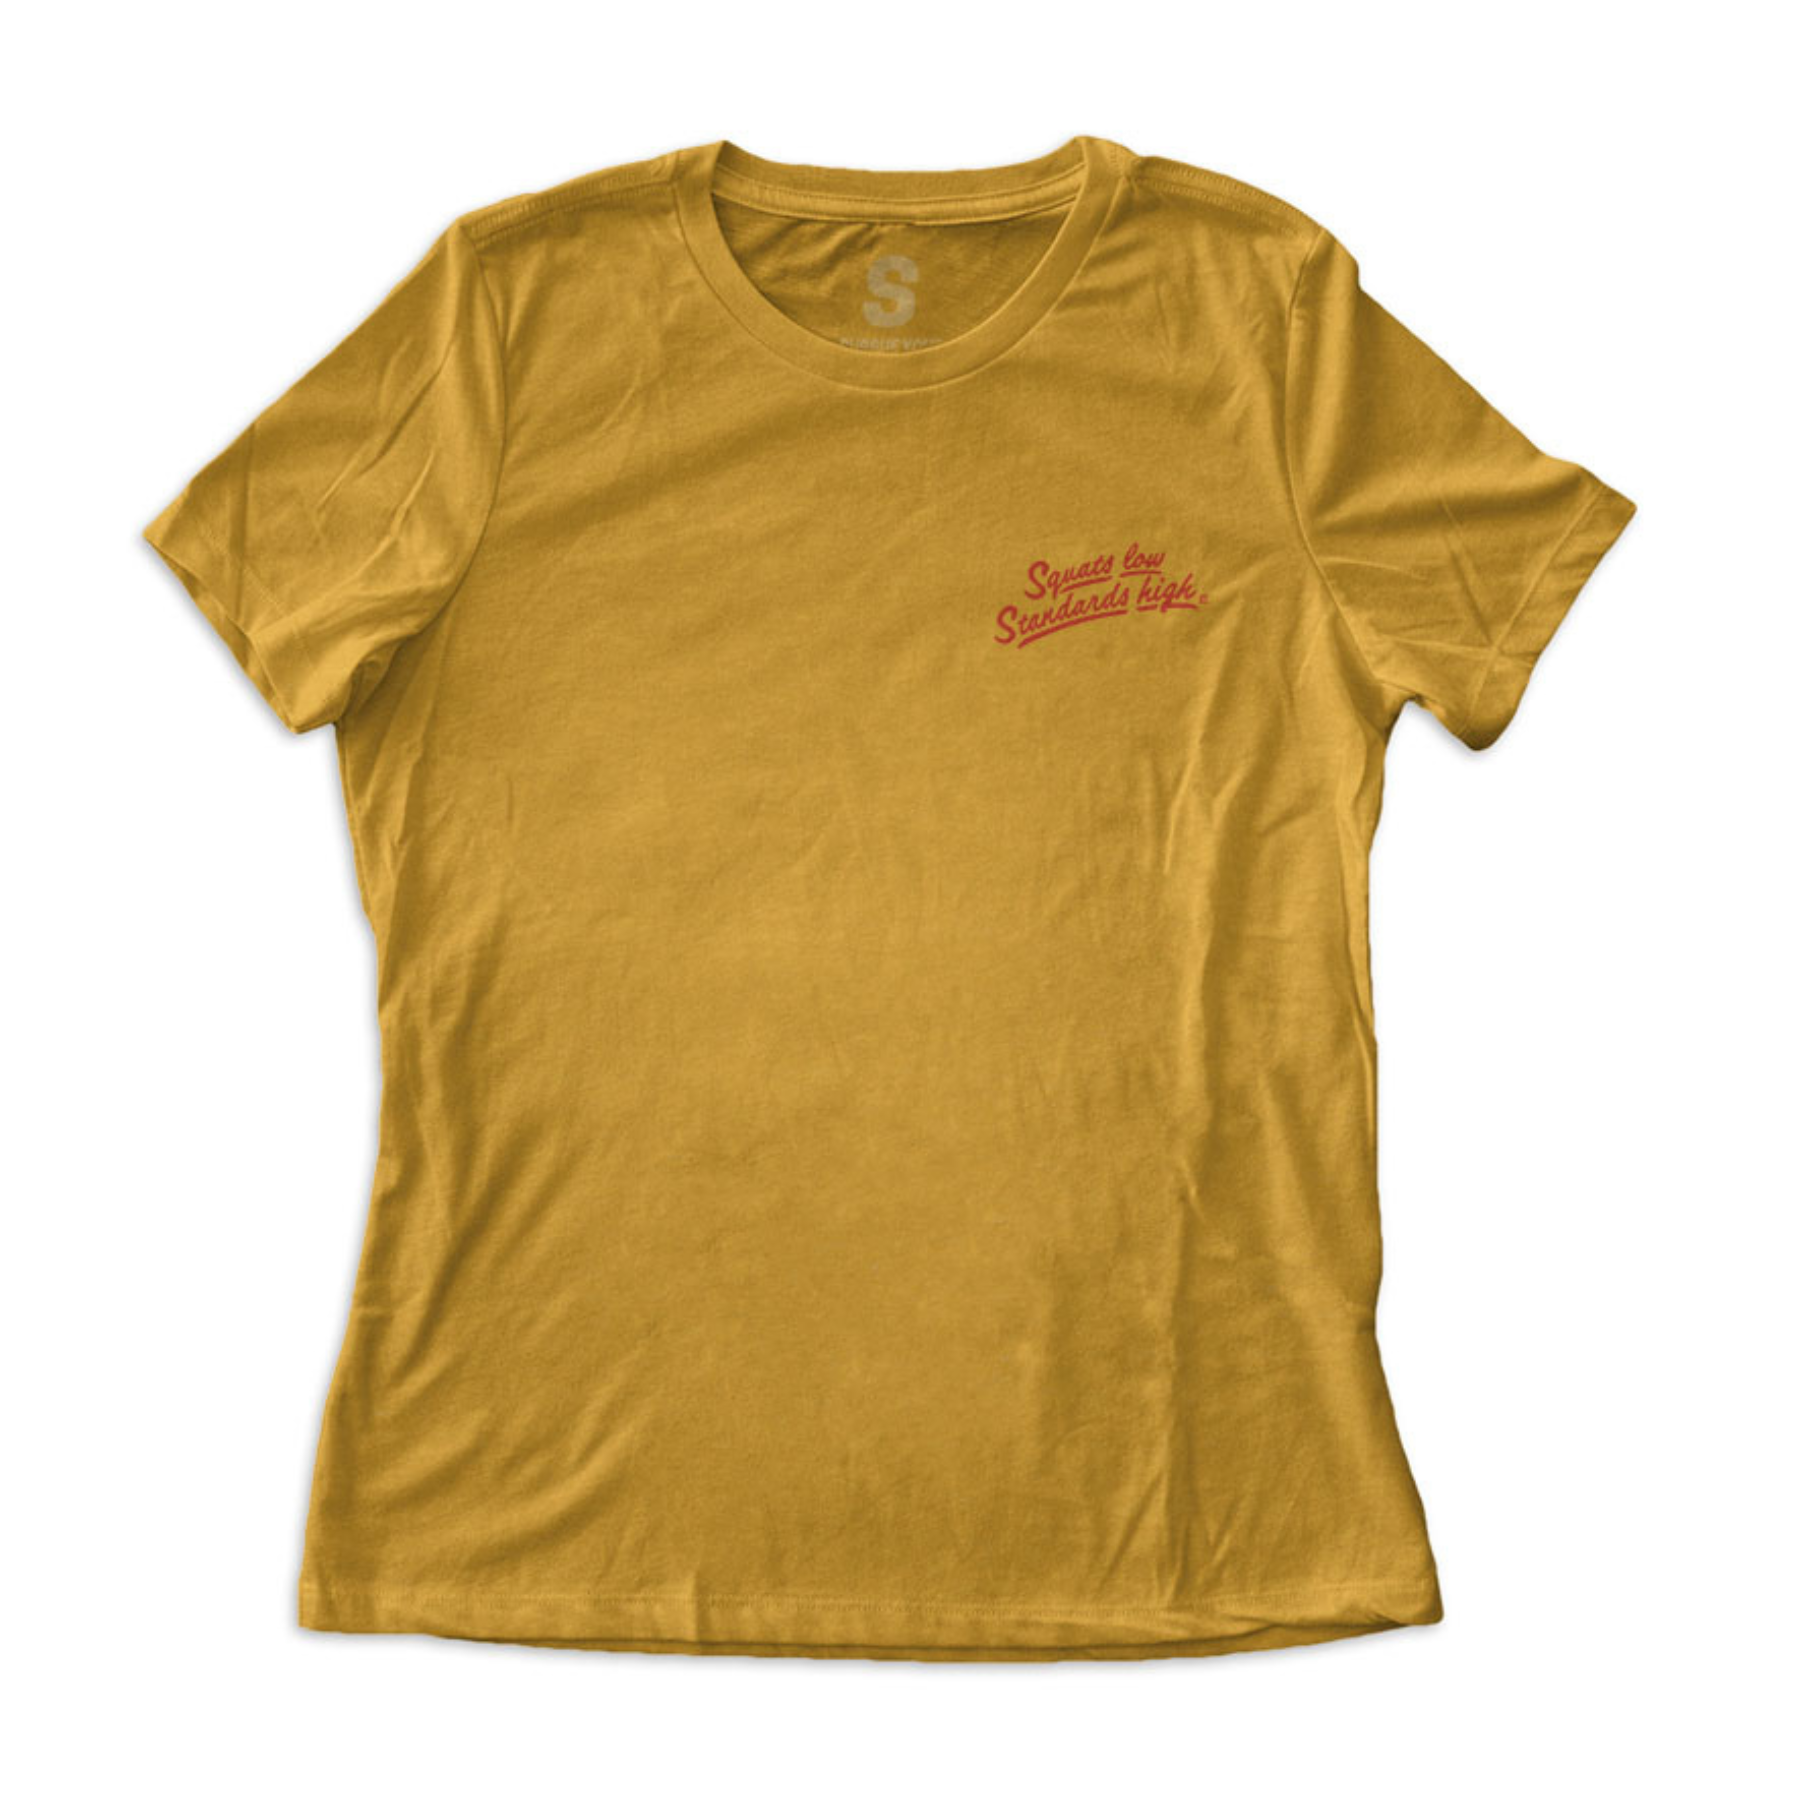 Squats Low. Standards High. women's mustard shirt